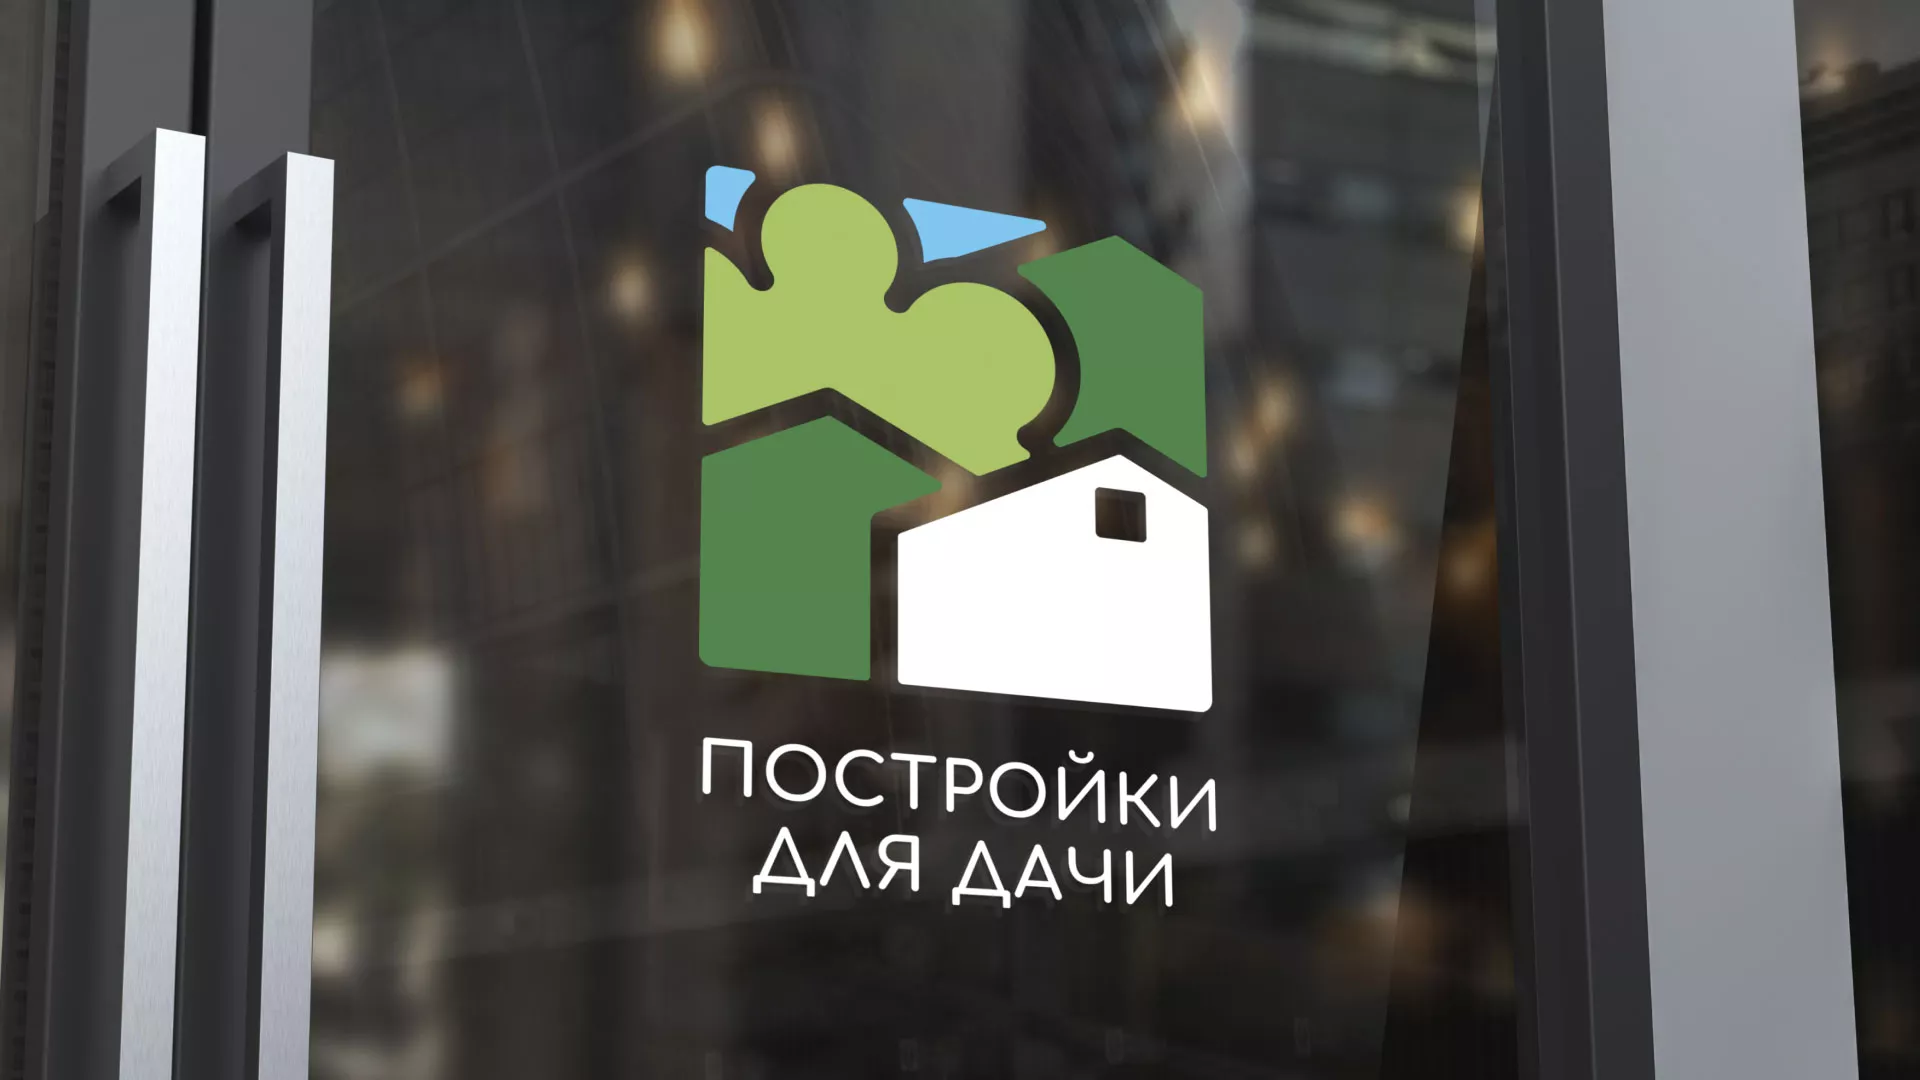 Разработка логотипа в Вёшках для компании «Постройки для дачи»